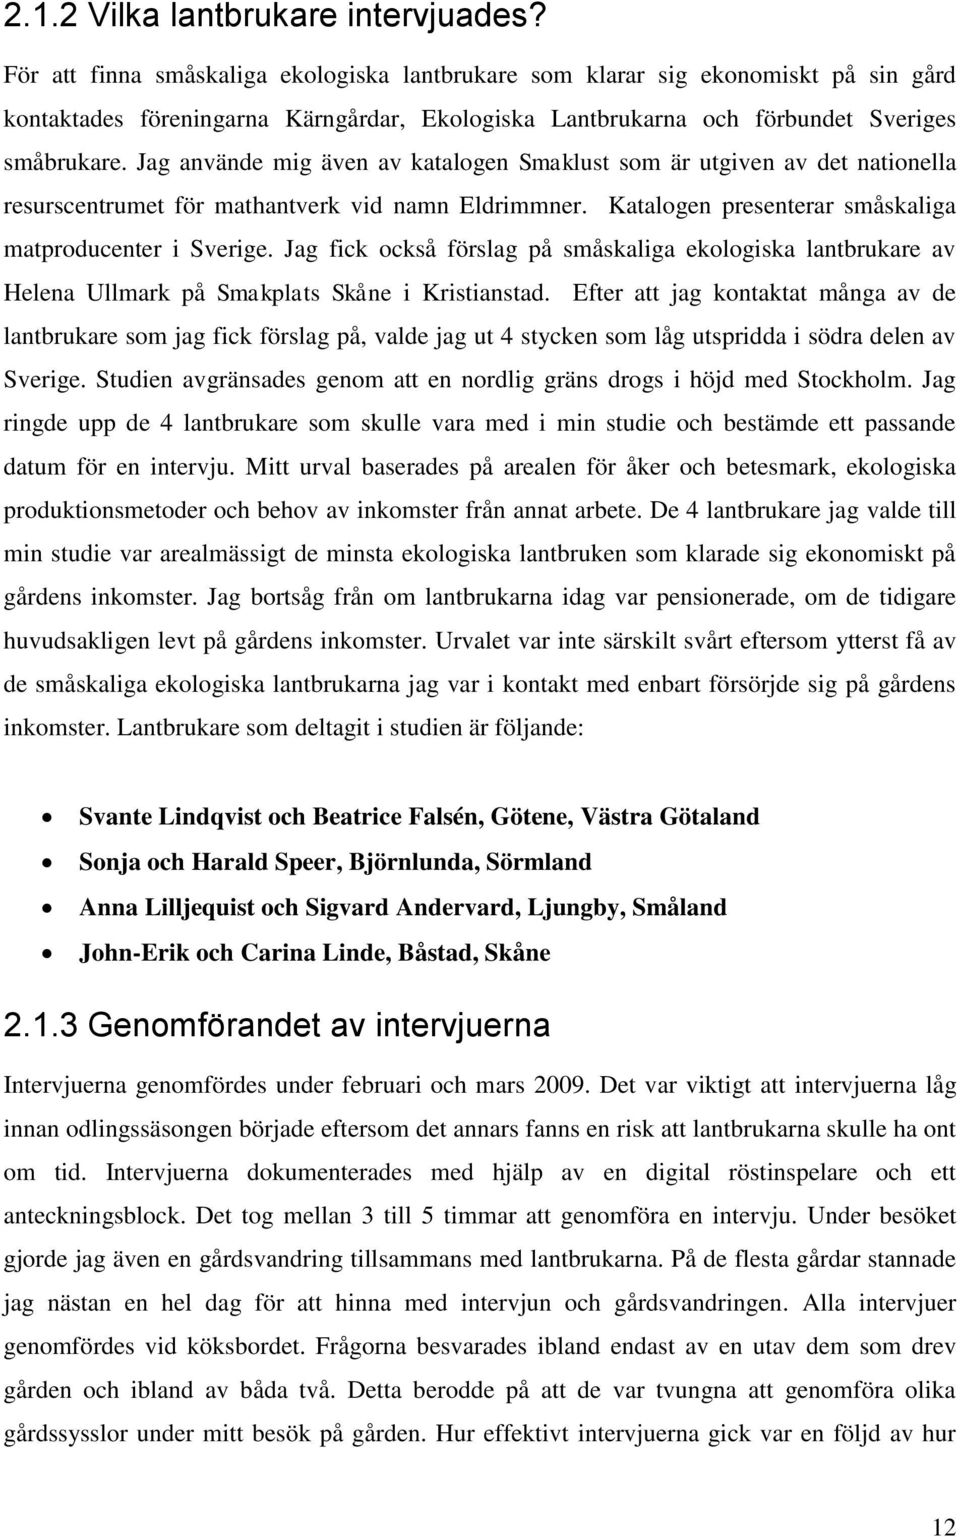 Jag använde mig även av katalogen Smaklust som är utgiven av det nationella resurscentrumet för mathantverk vid namn Eldrimmner. Katalogen presenterar småskaliga matproducenter i Sverige.